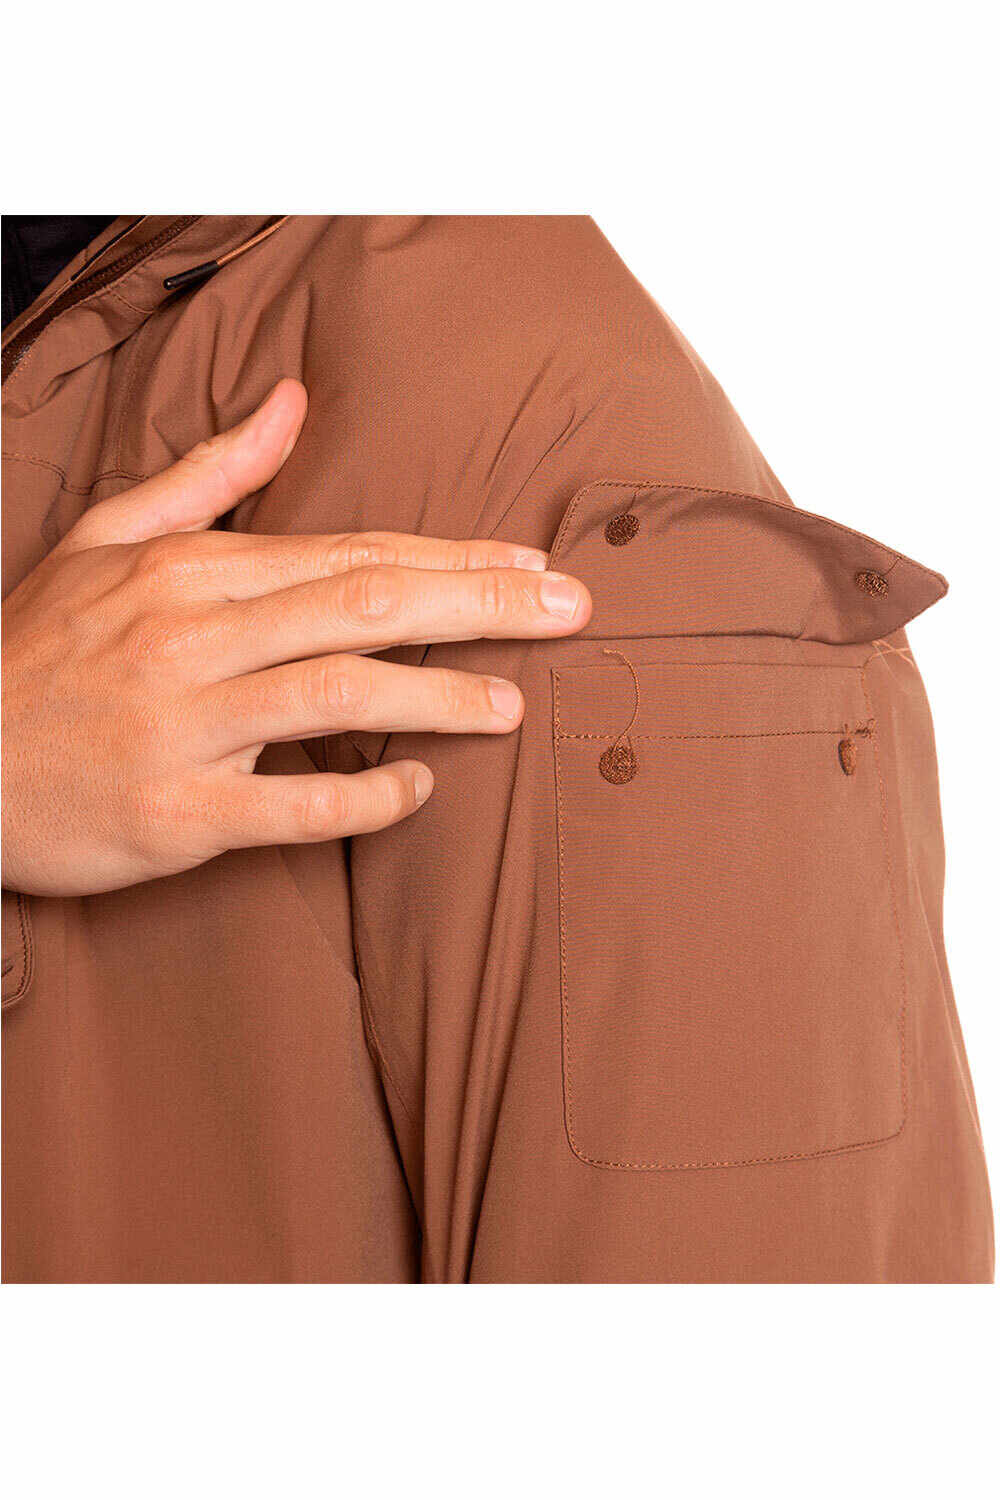 Trango chaqueta impermeable insulada hombre QUERCUS TERMIC VD 04